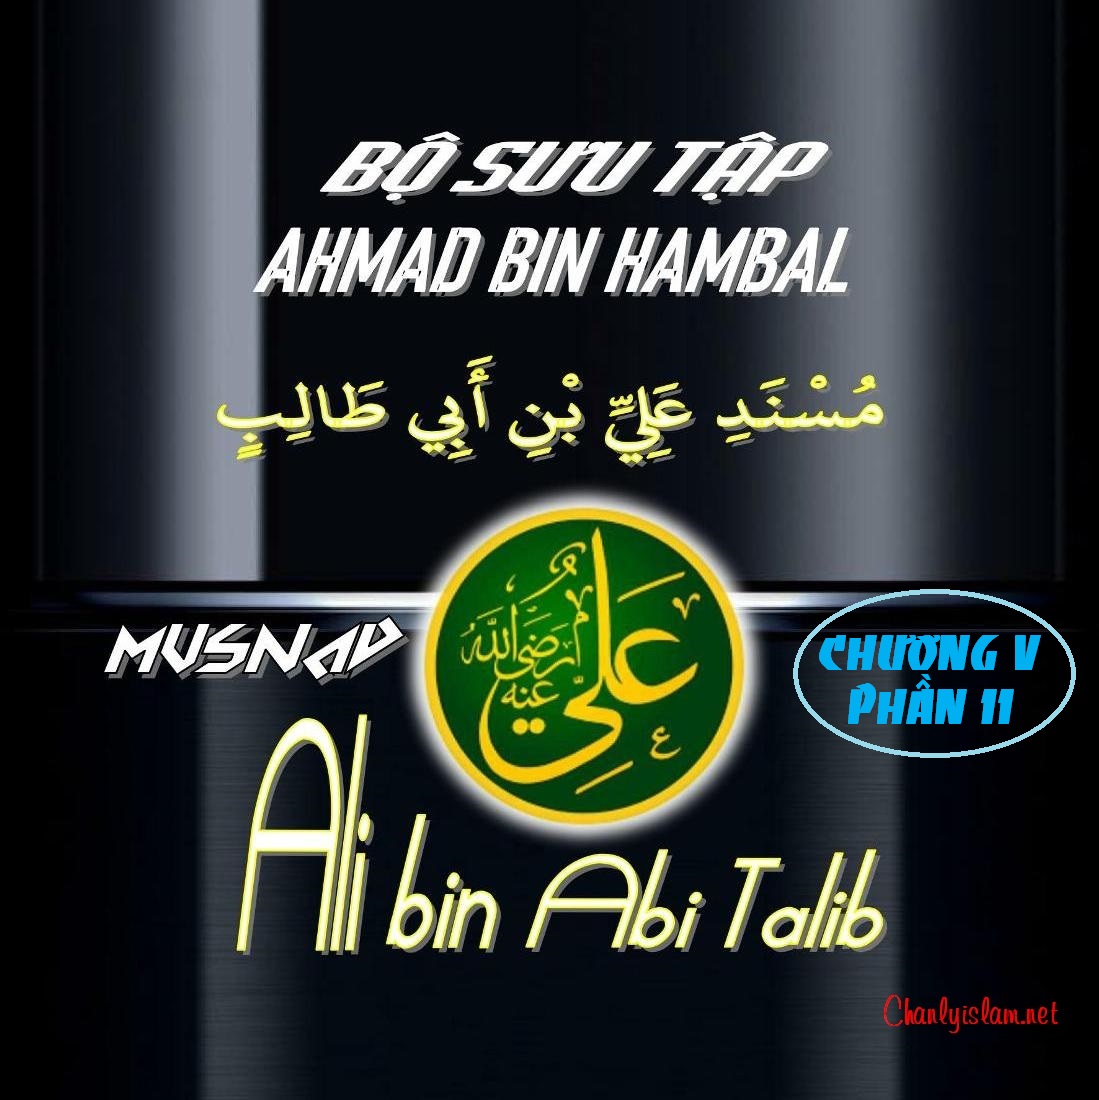 BỘ SƯU TẬP MUSNAD IMAM AHMAD IBN HANBAL - CHƯƠNG V - MUSNAD ALI BIN ABI TALIB - PHẦN 11